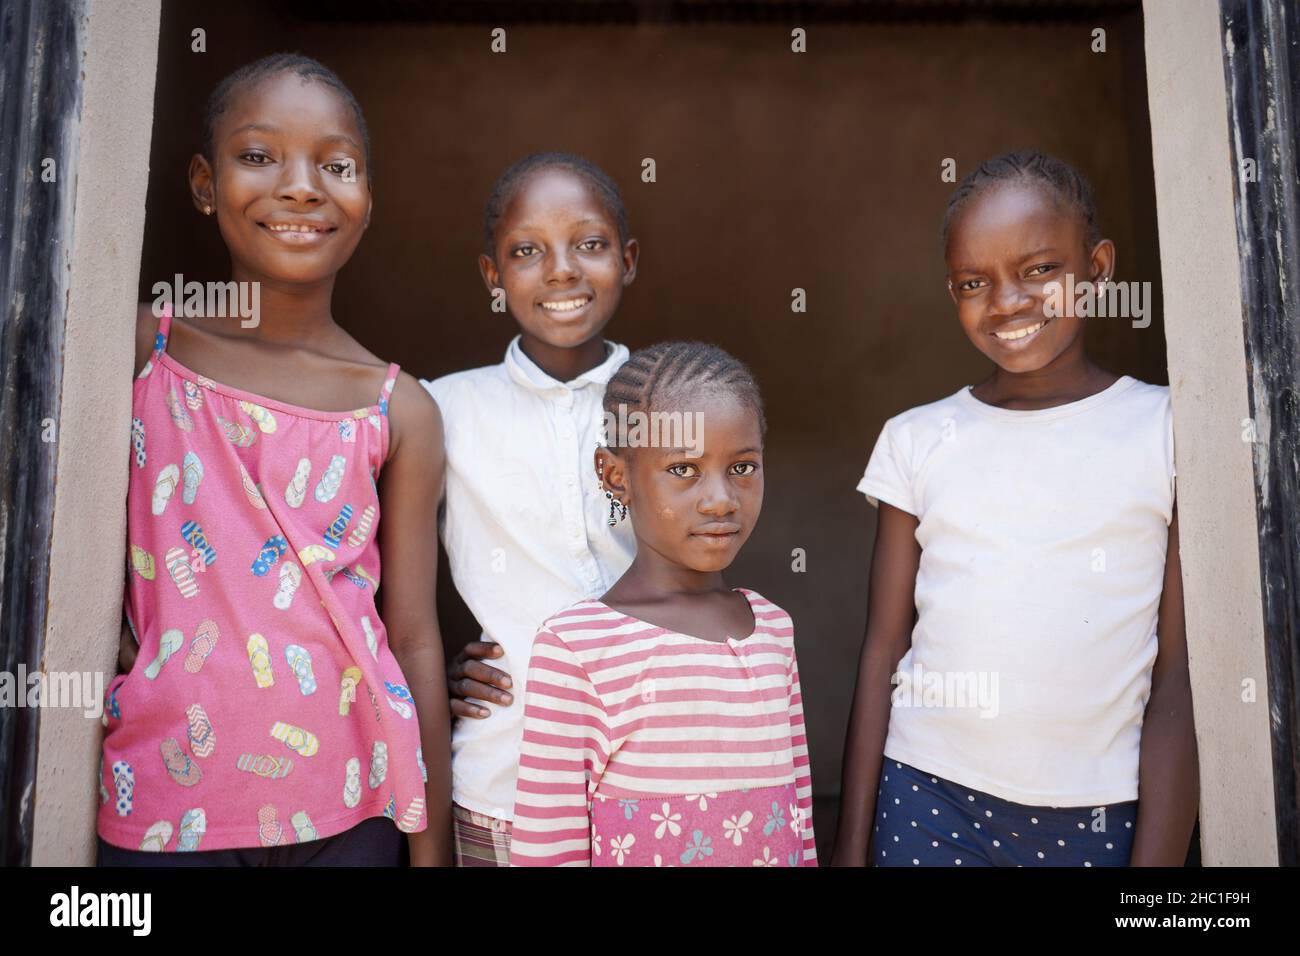 Groupe de quatre jeunes filles noires africaines dans des vêtements décontractés souriant à l'appareil photo et montrant un comportement détendu et confiant Banque D'Images